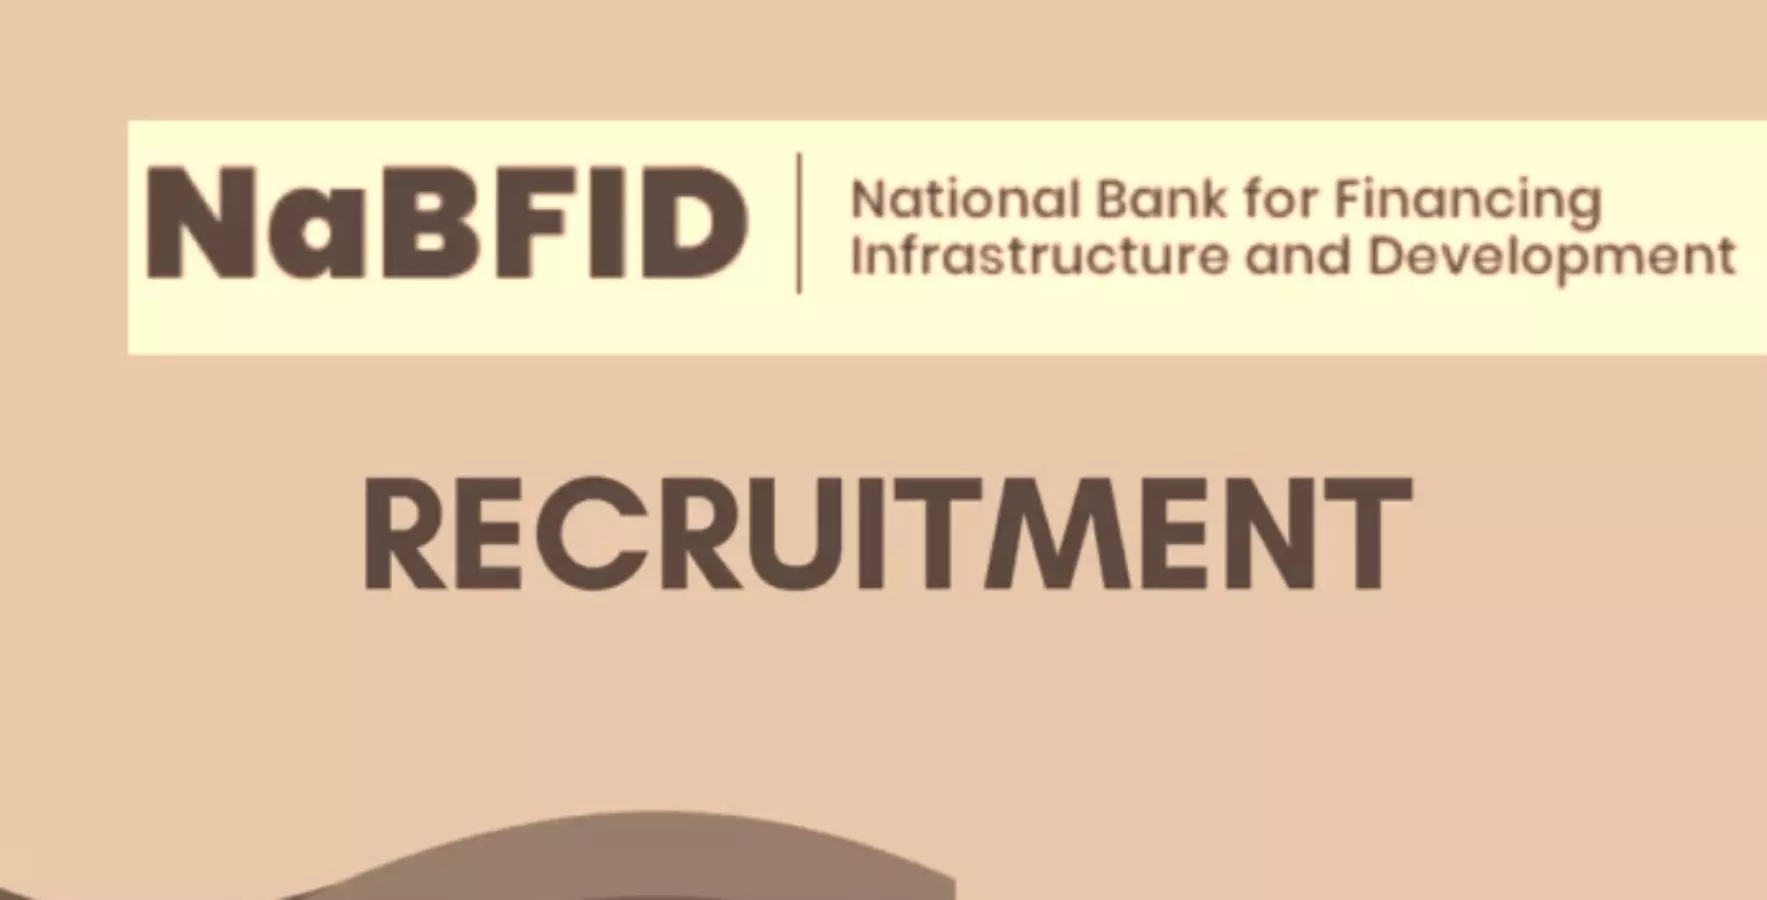 नेशनल बैंक फॉर फाइनेंसिंग इंफ्रास्ट्रक्चर (NaBFID) में निकली योग्य अधिकारी की भर्ती , सालाना सैलरी पैकेज 14 लाख से ऊपर